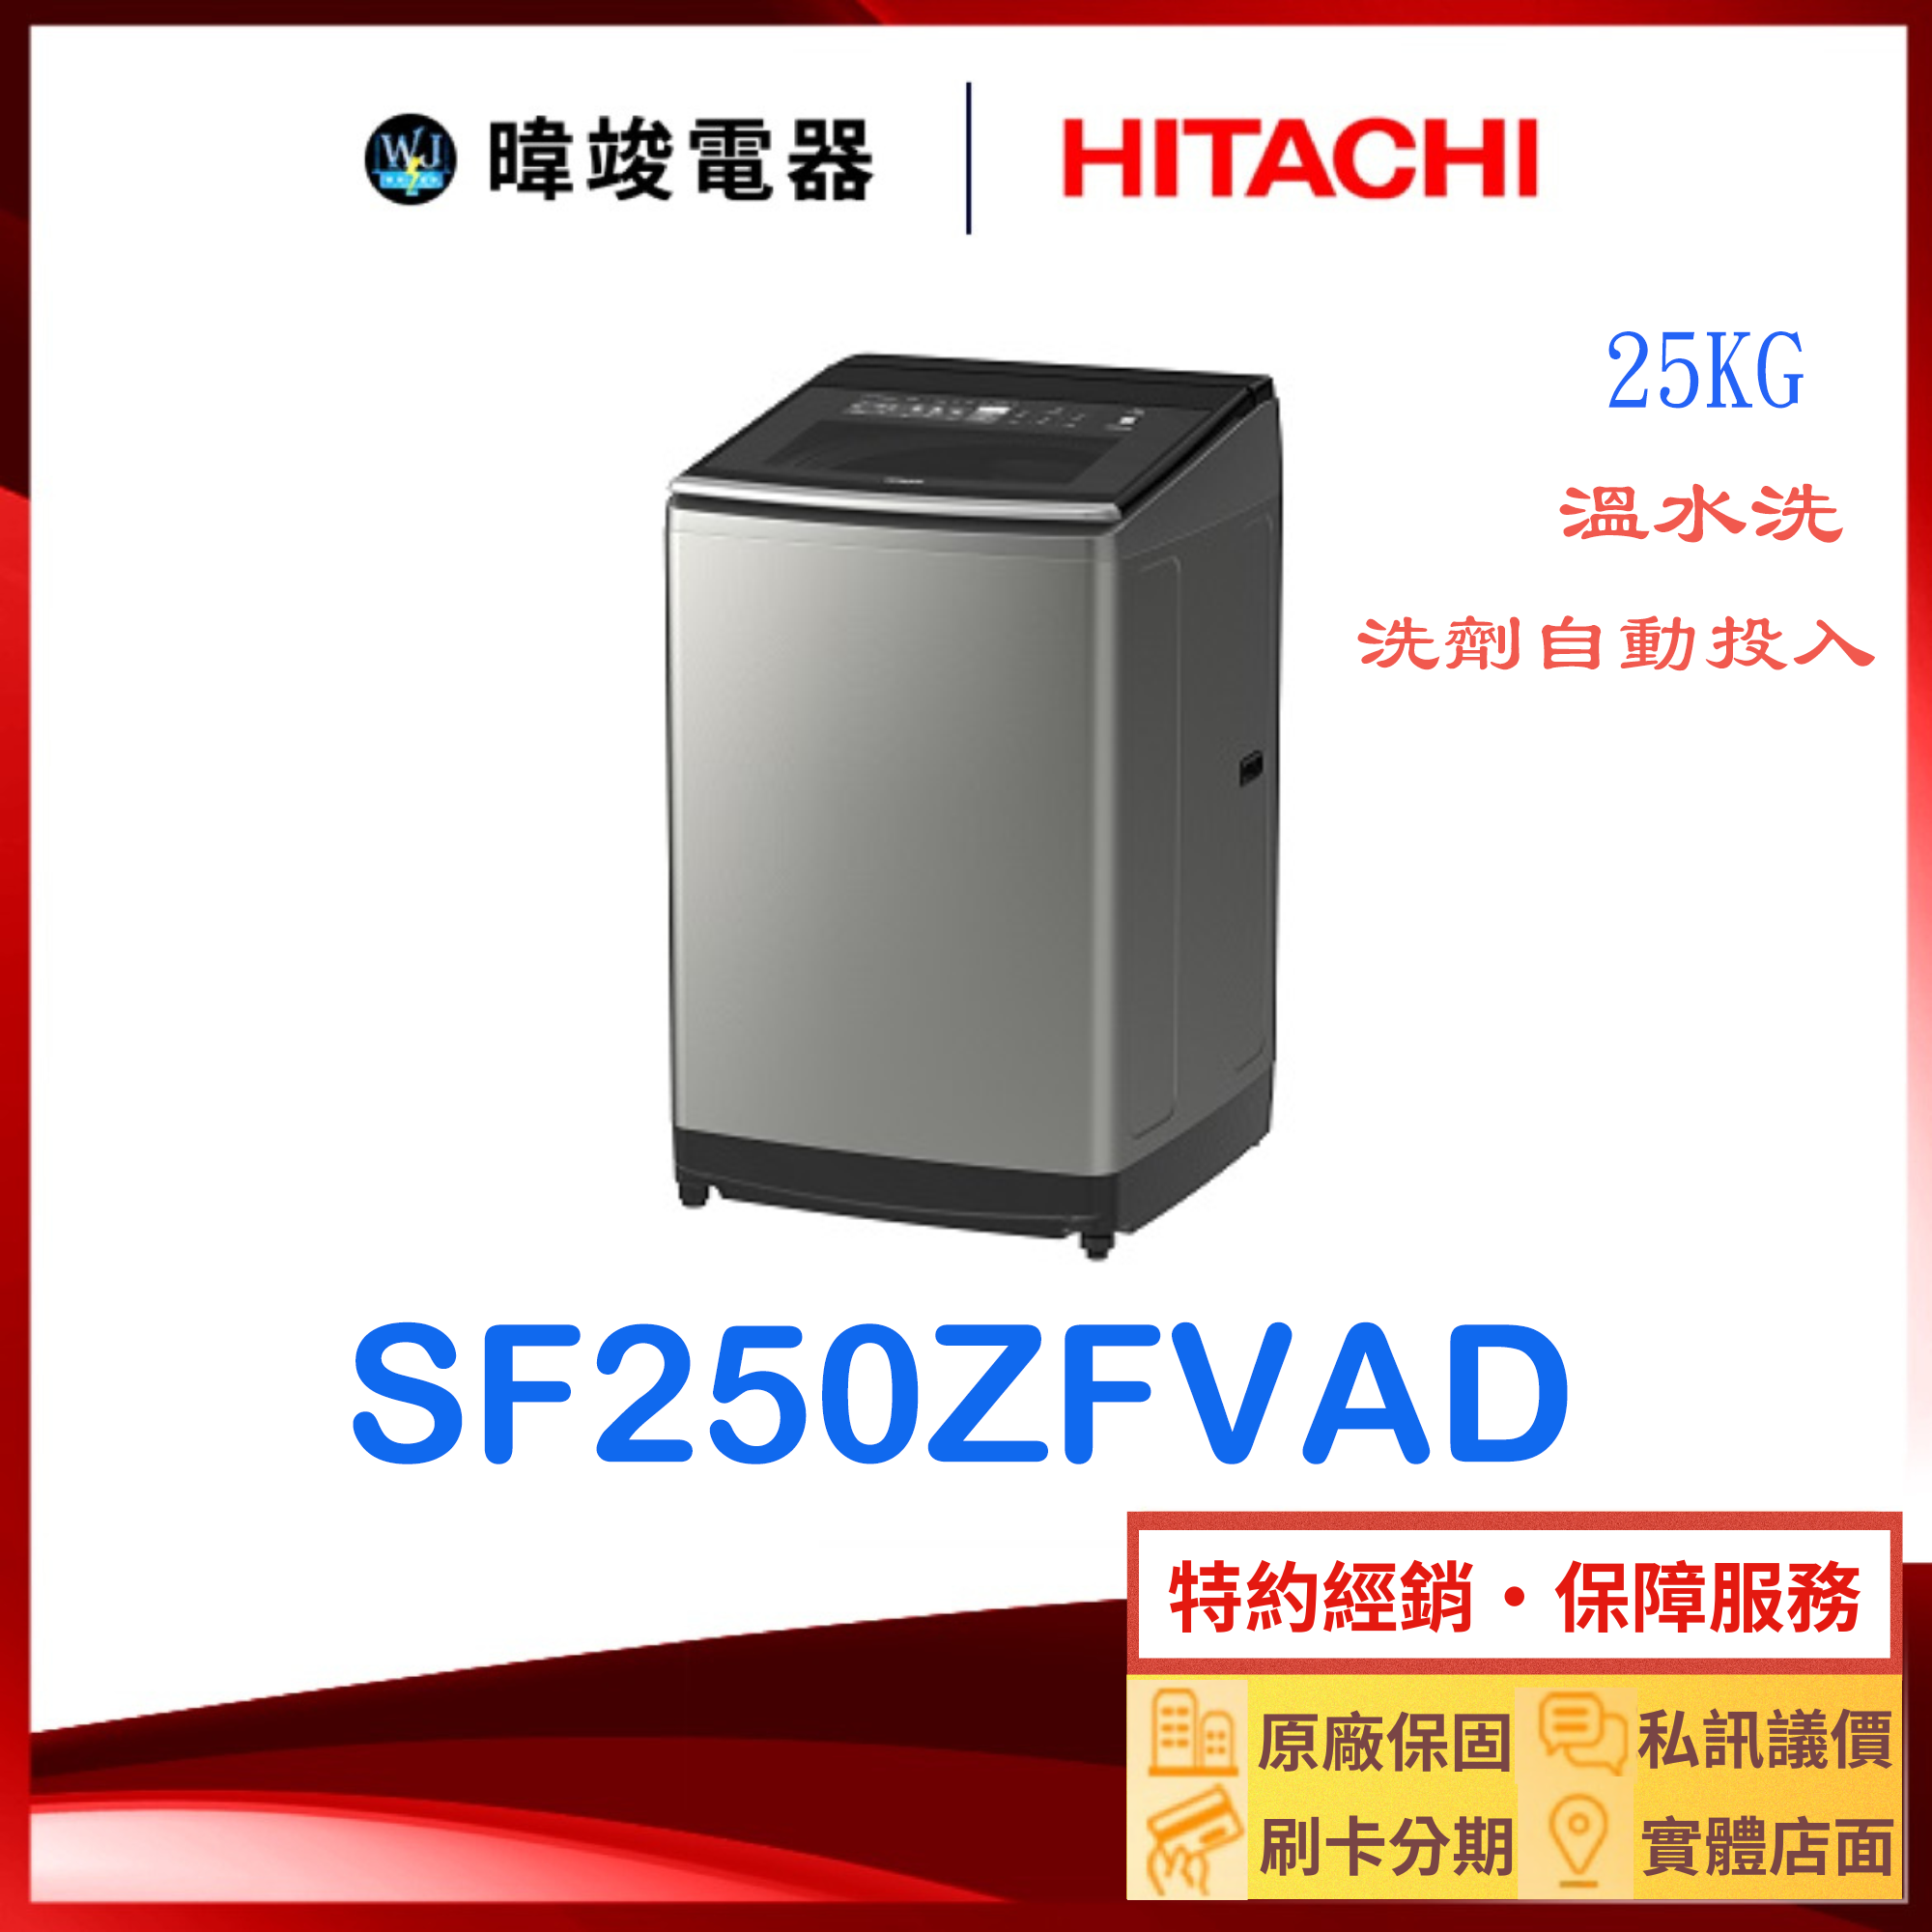 【獨家折扣碼】HITACHI 日立 SF250ZFVAD 洗劑自動投入洗衣機 大容量 溫水洗衣機 SF-250ZFVAD